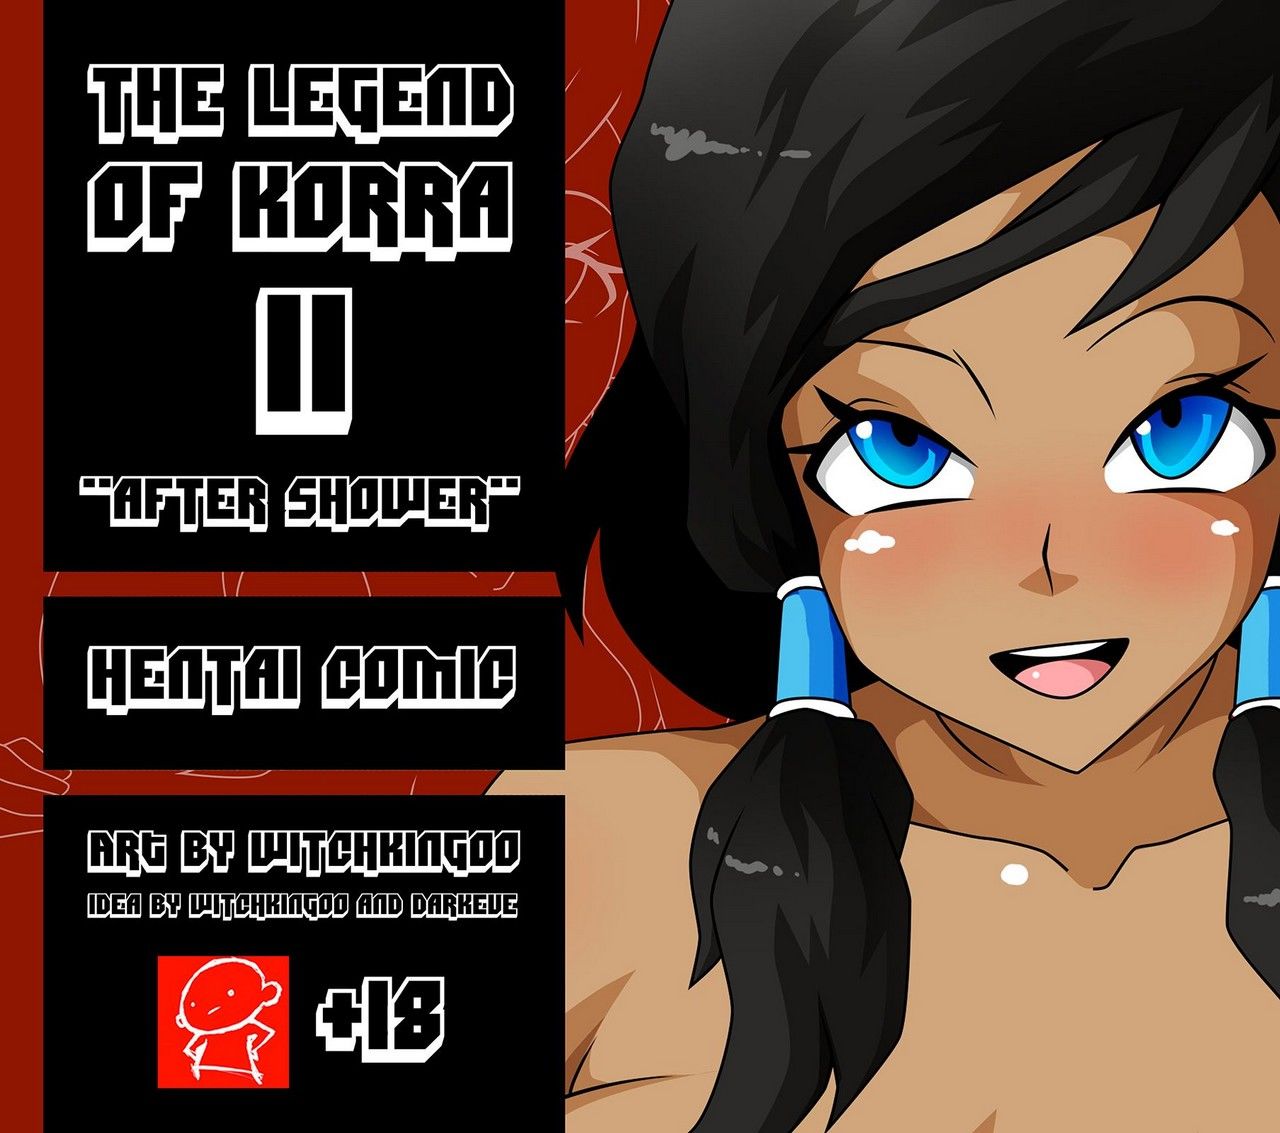 The Legend Of Korra 2 - After Shower page 1